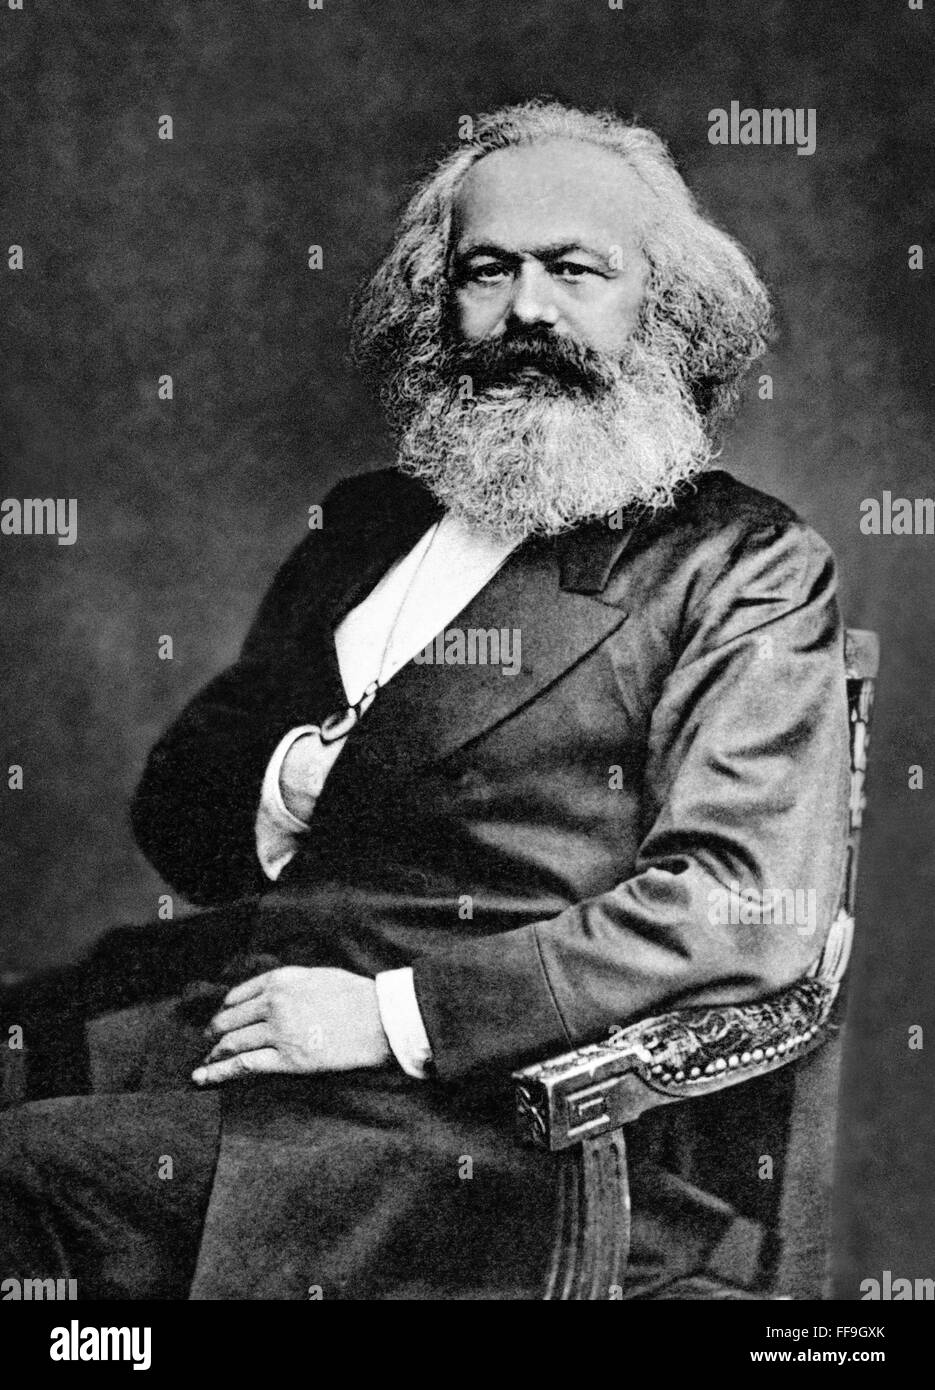 Karl Marx, geboren sozialistische Philosoph, Ökonom und Schriftsteller. Foto c.1875 Stockfoto